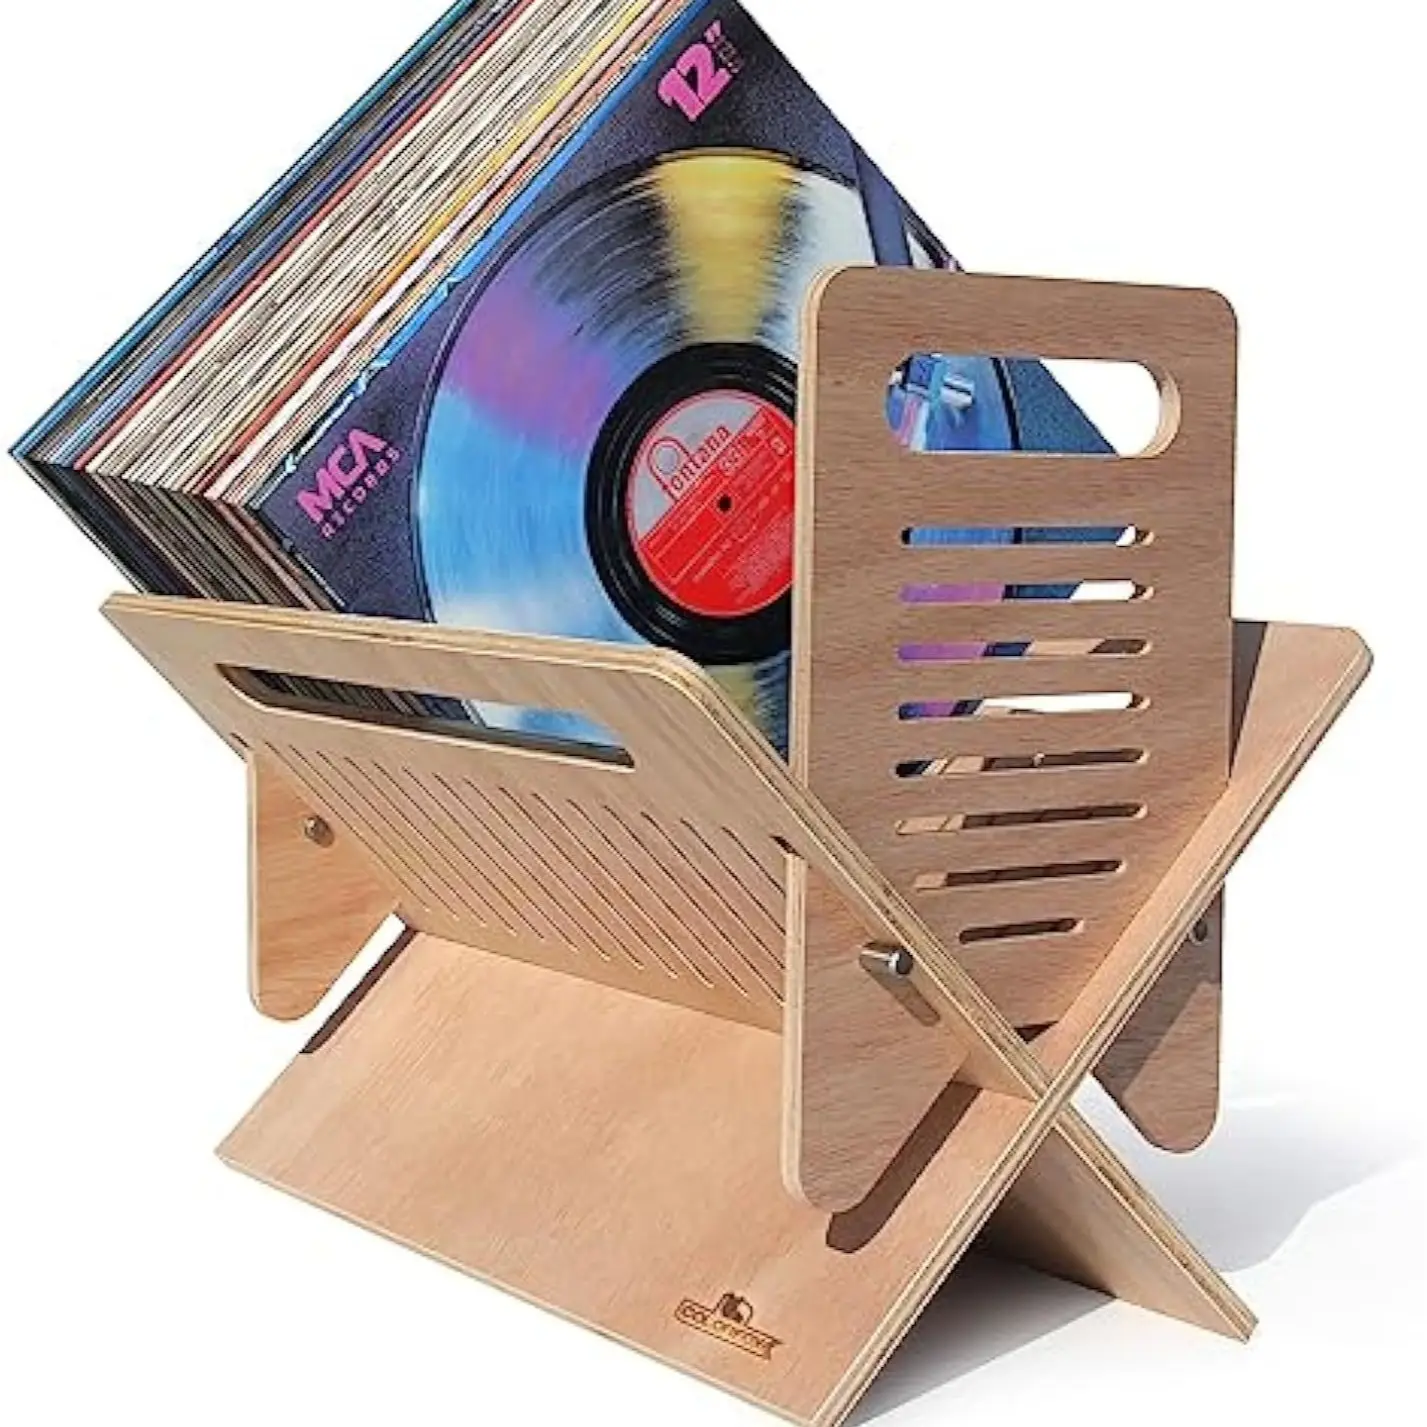 Porte-revues multi-usages en bois pour disques vinyles et livres Rangement portable pour CD Design créatif Artisanat du bois Boîtes en bois Panneaux muraux